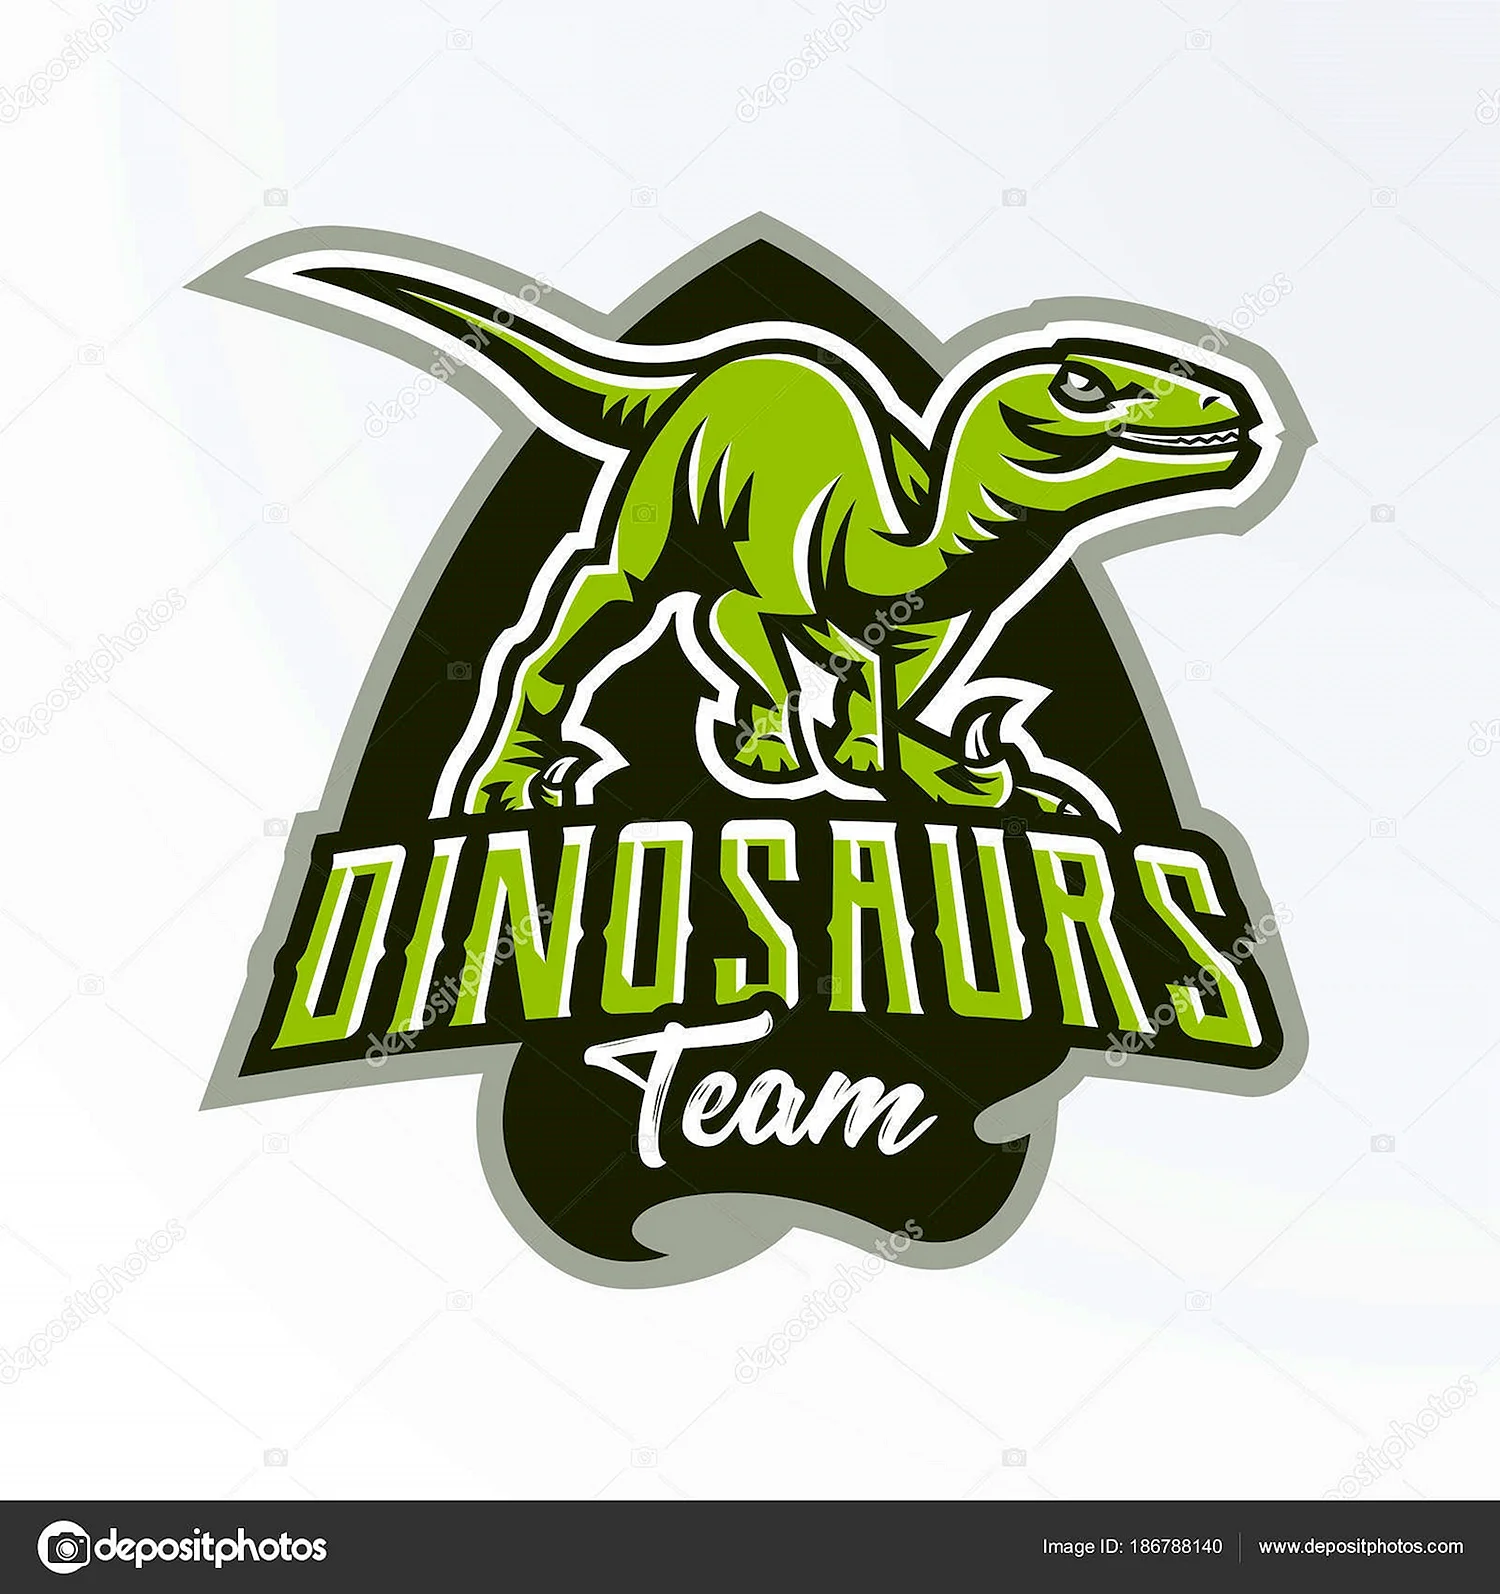 Динозавр эмблема